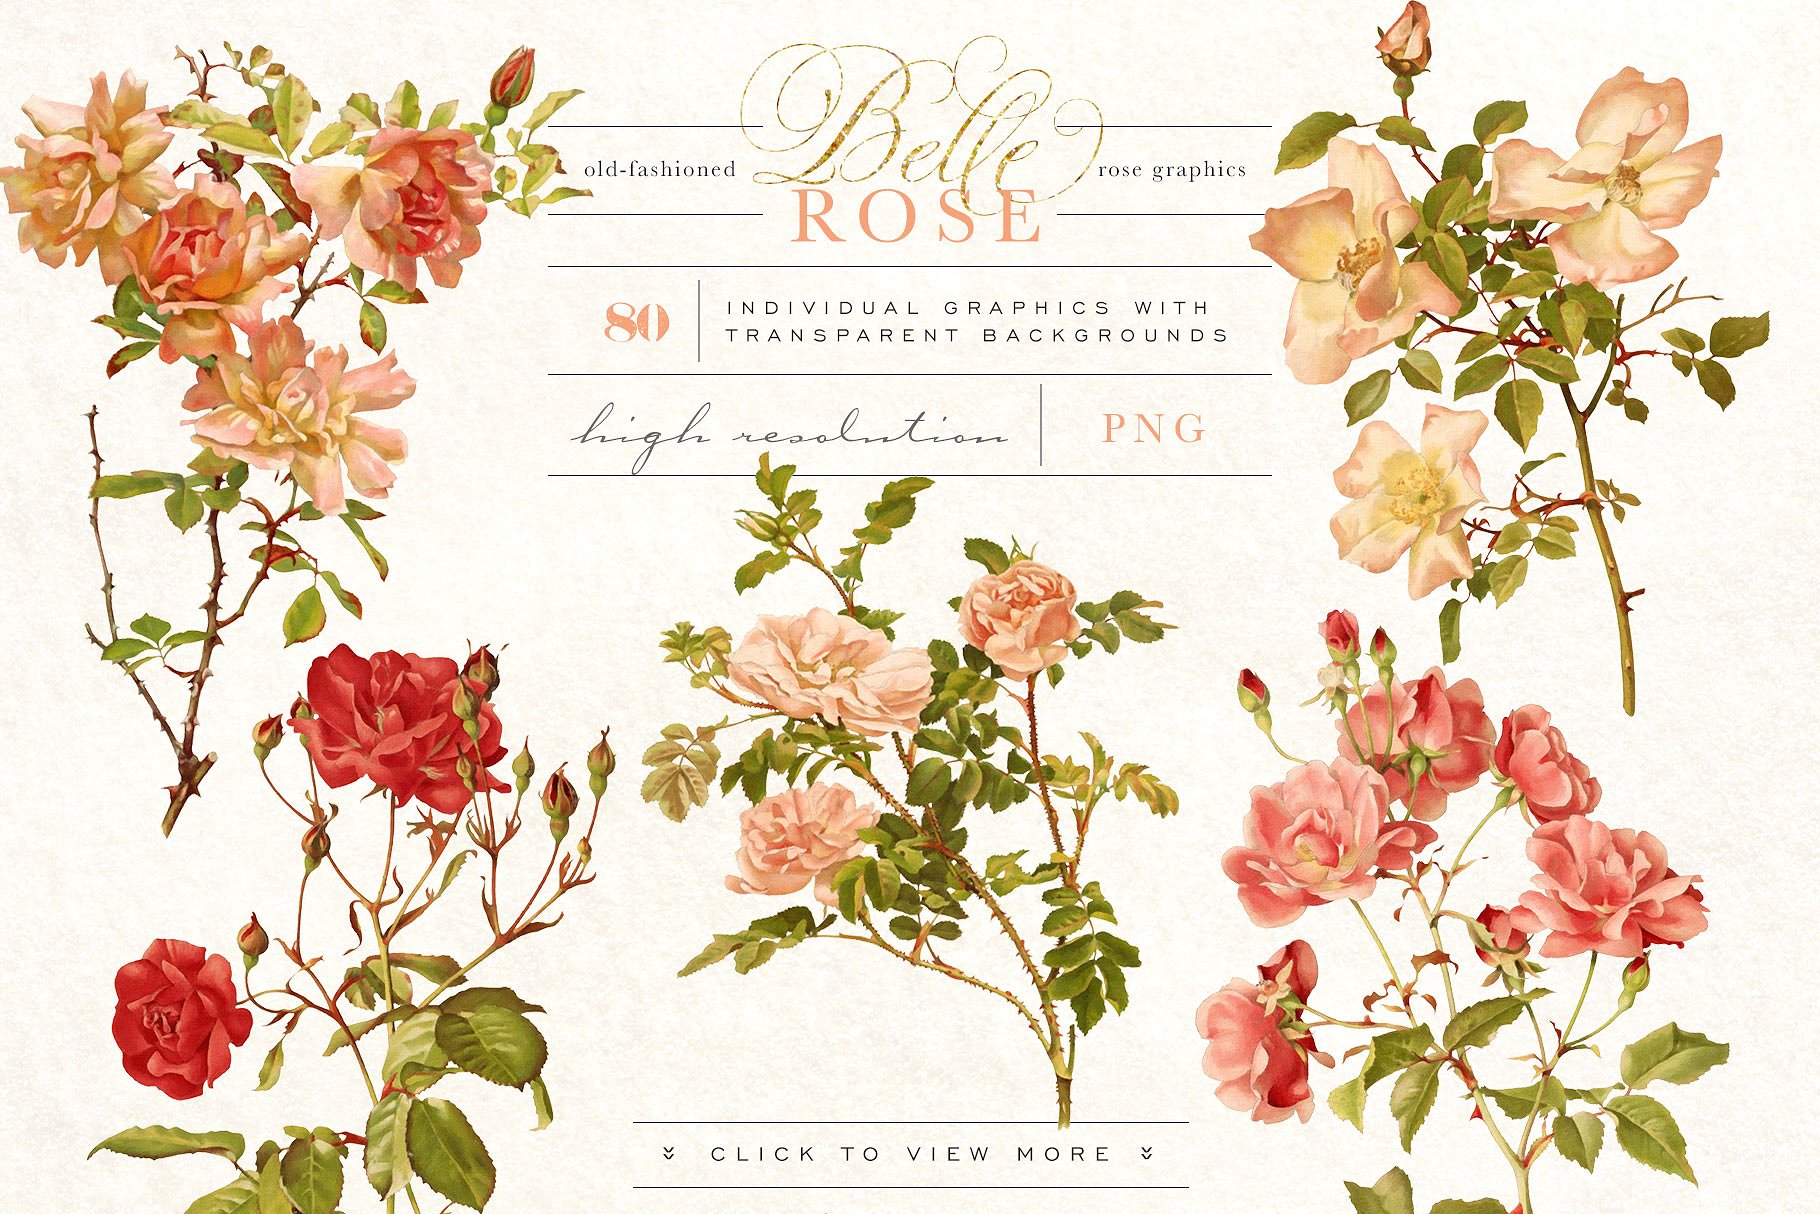 旧时尚老派水彩玫瑰花卉剪贴画合集 Belle Rose Antique Graphics Bundle插图(2)